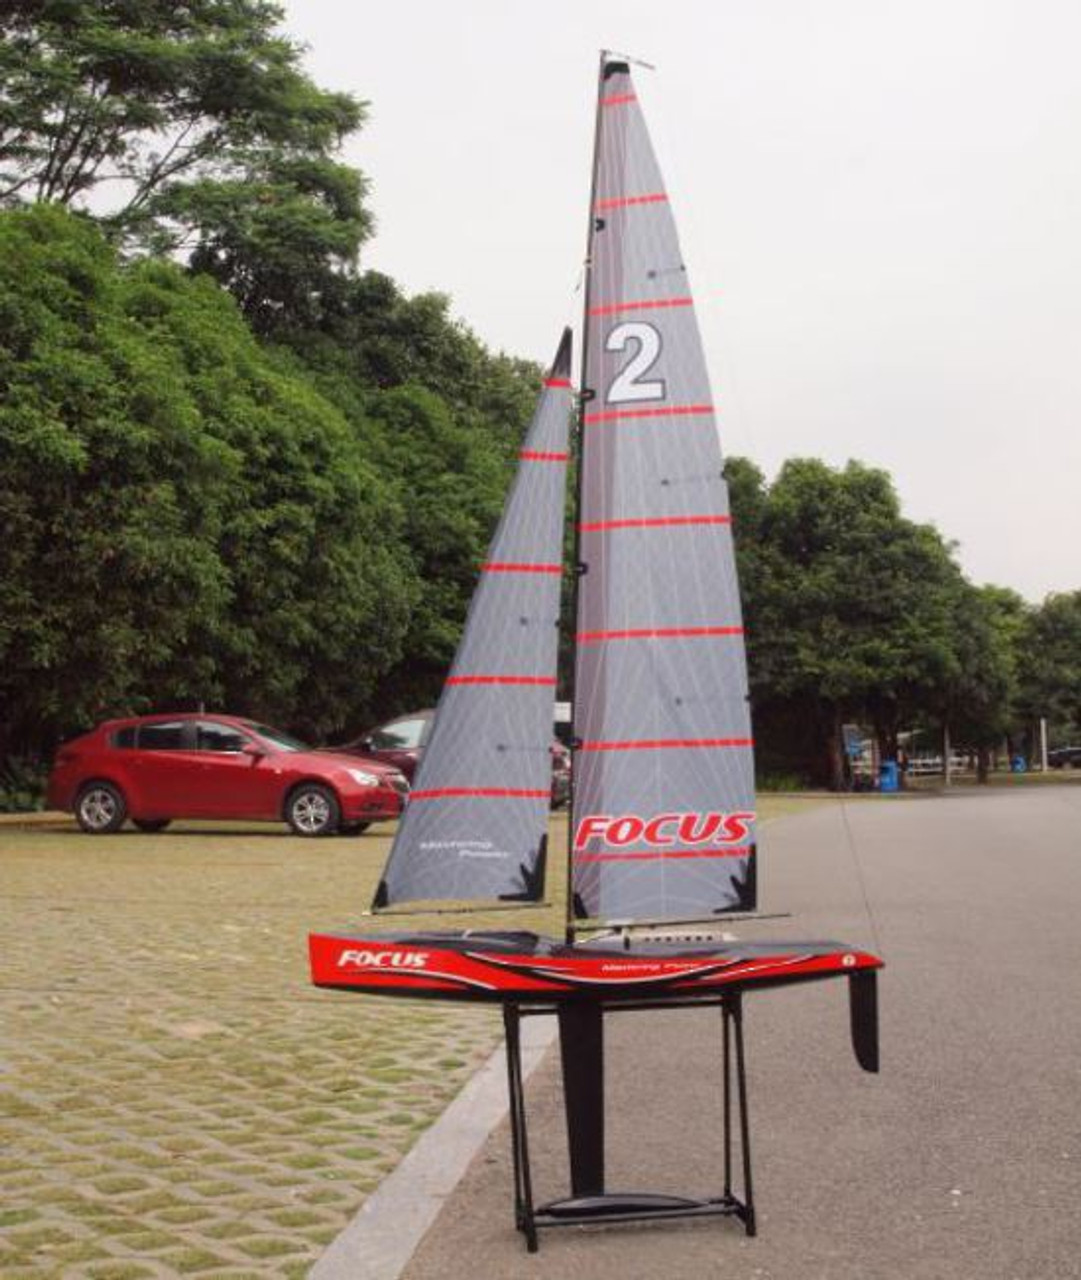 1 meter rc sailboat kits